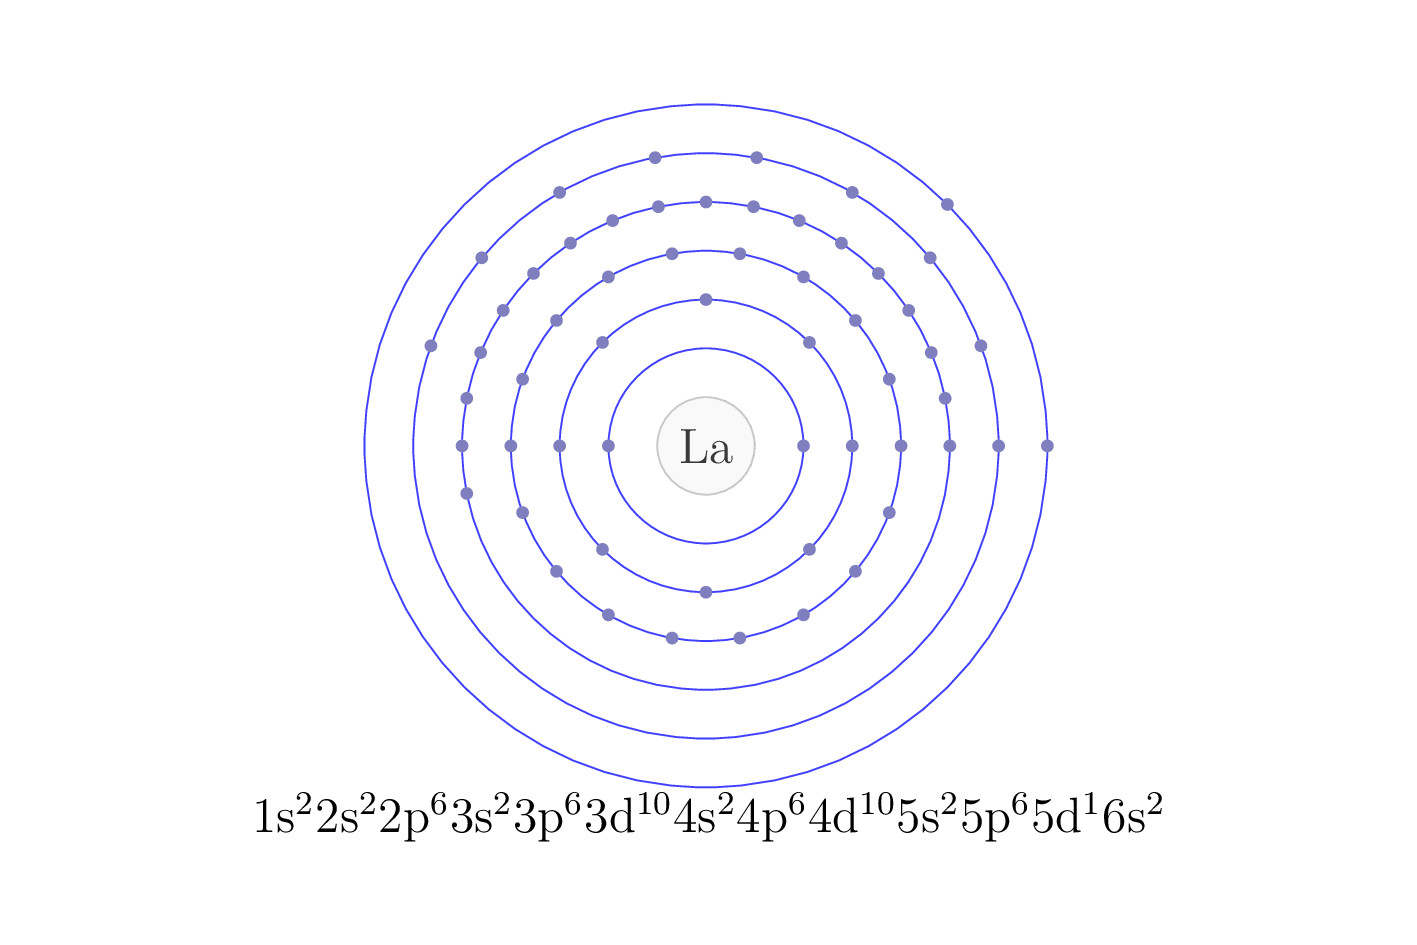 electron configuration of element La